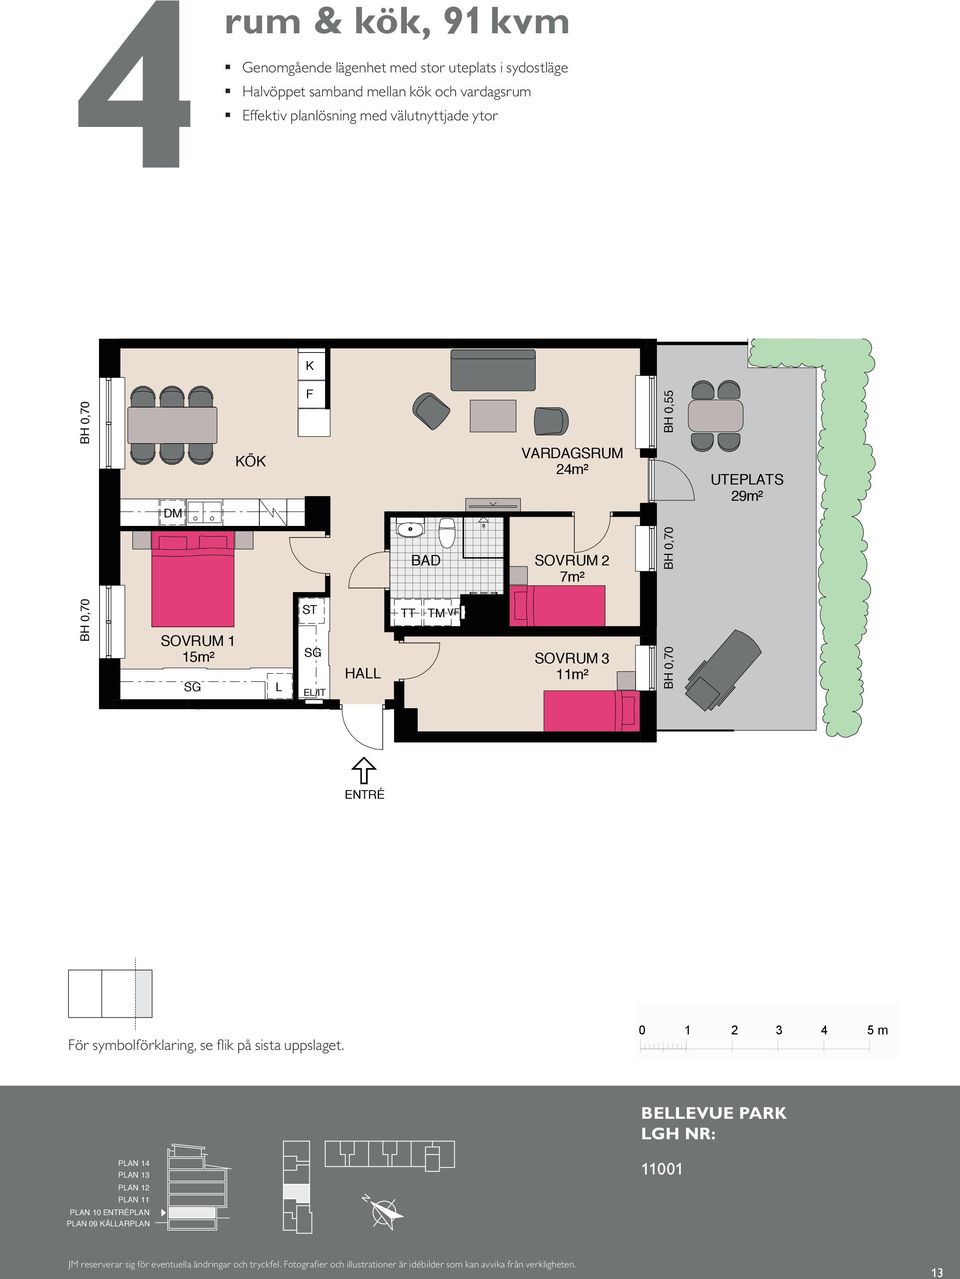 rum med väl och utnyttjade kök, ytor 46 m² Genomgående lägenhet med stor uteplats mot sydost Kompakt lägenhet med öppna rumssamband Sovrum med plats för två Balkong mot gård K K F F BAKOG 8 BH 0,55 m